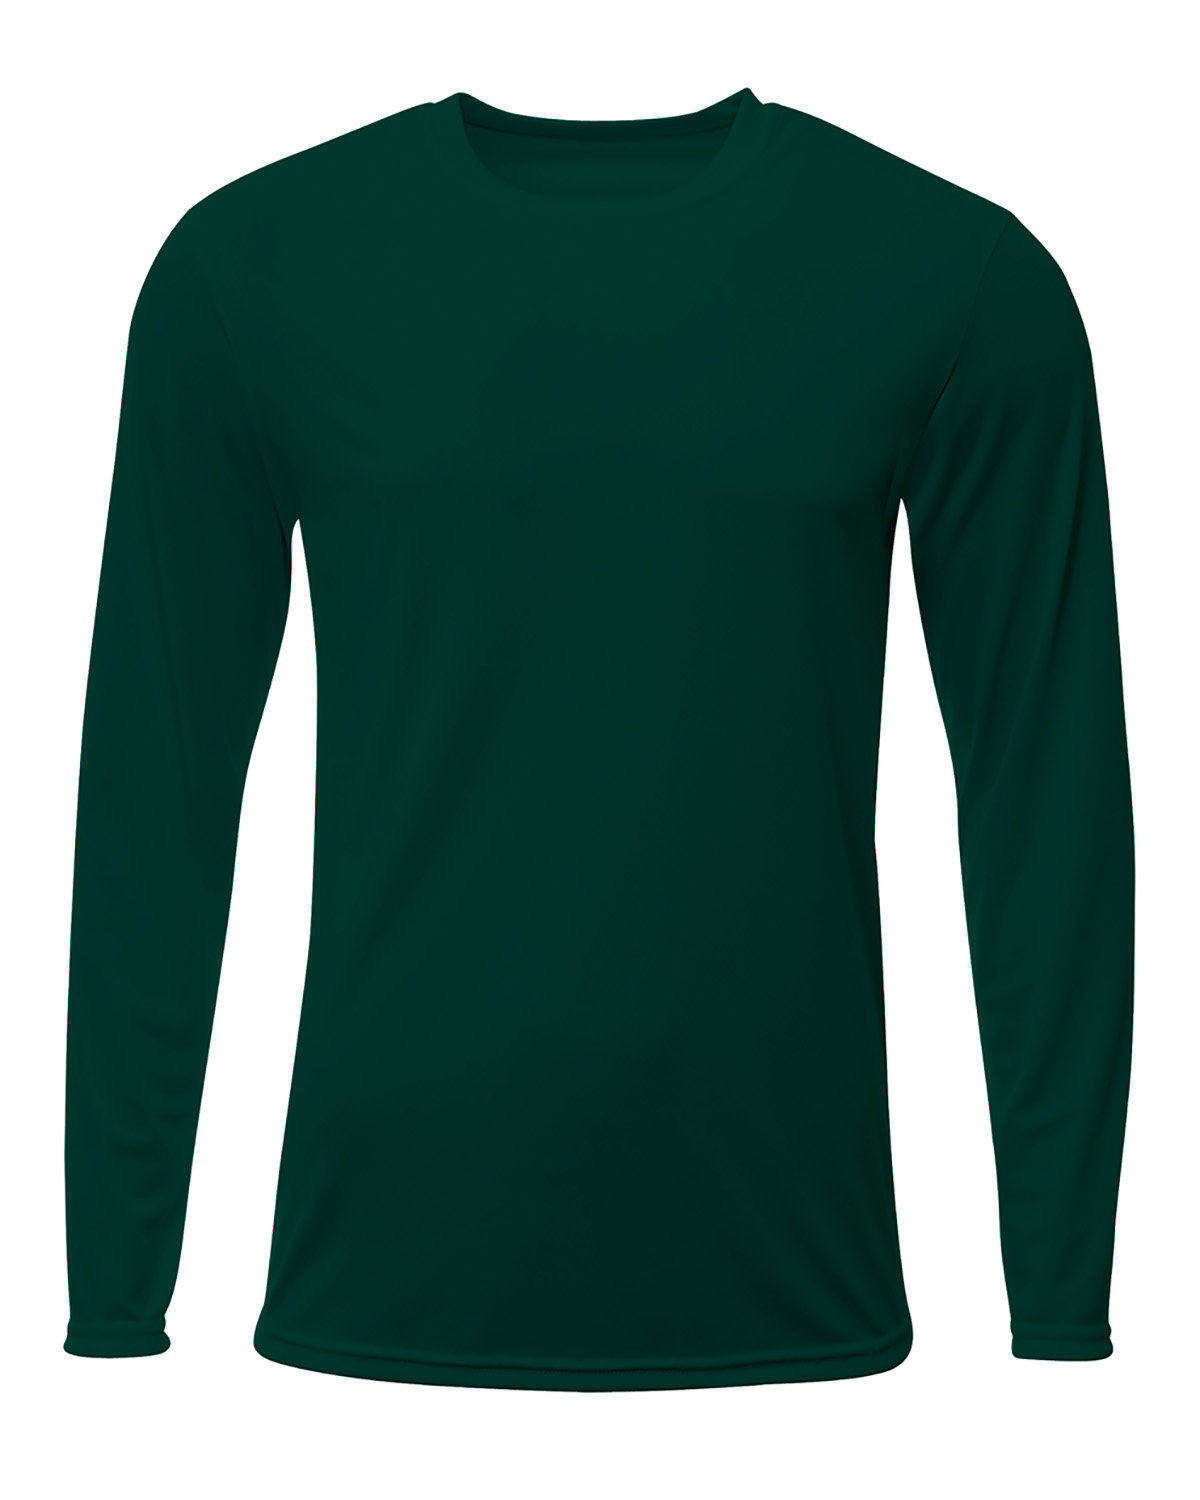 A4 Men's Sprint Long Sleeve T-Shirt FOREST 